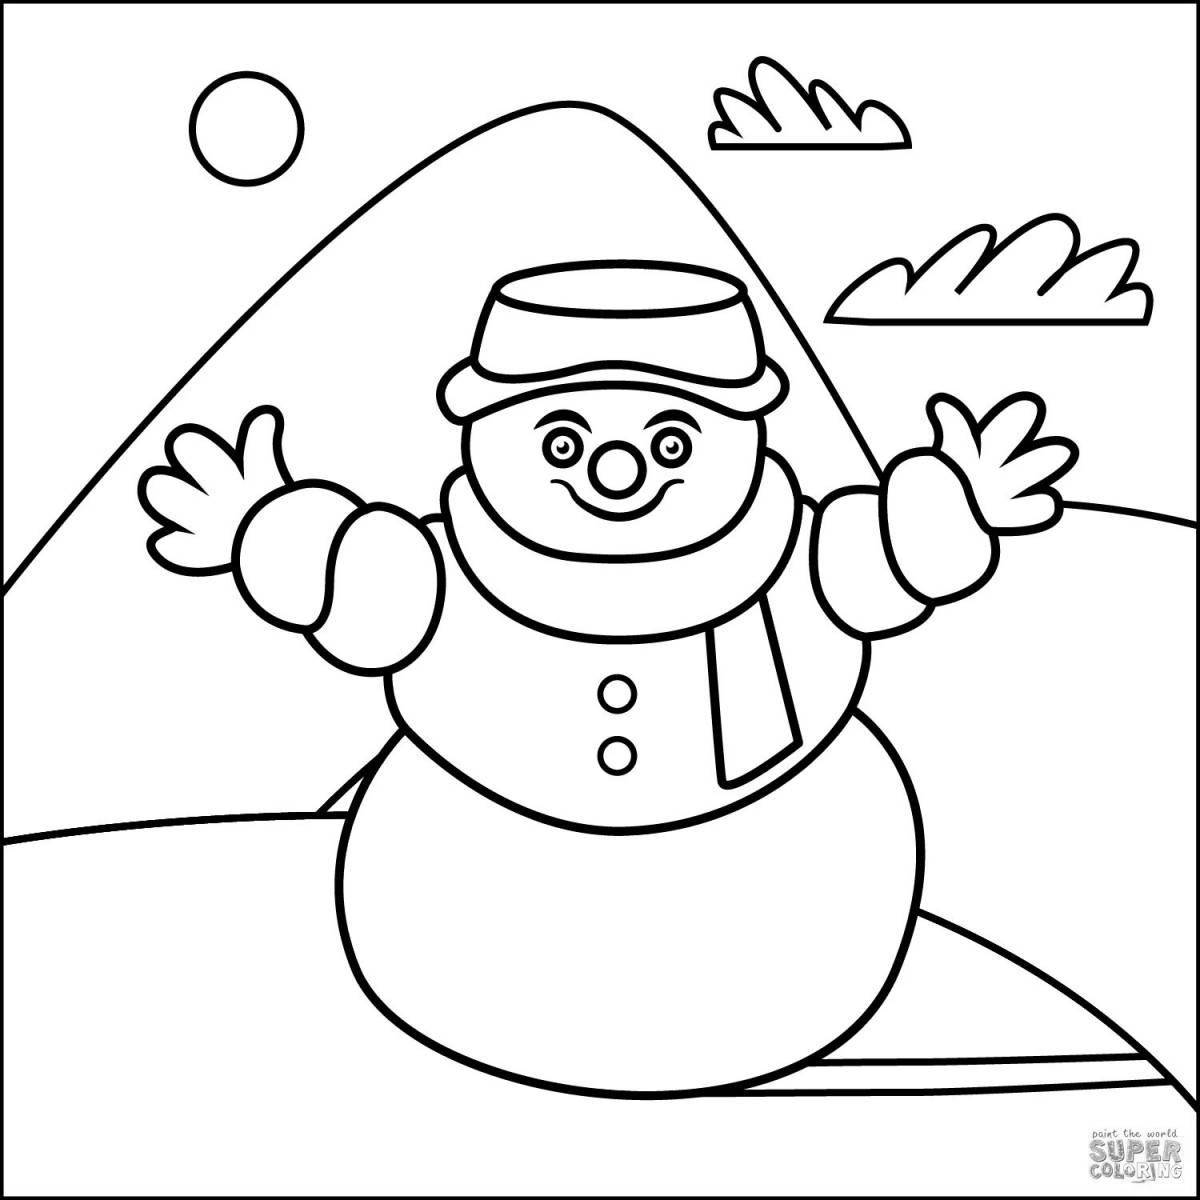 Skating snowman #2